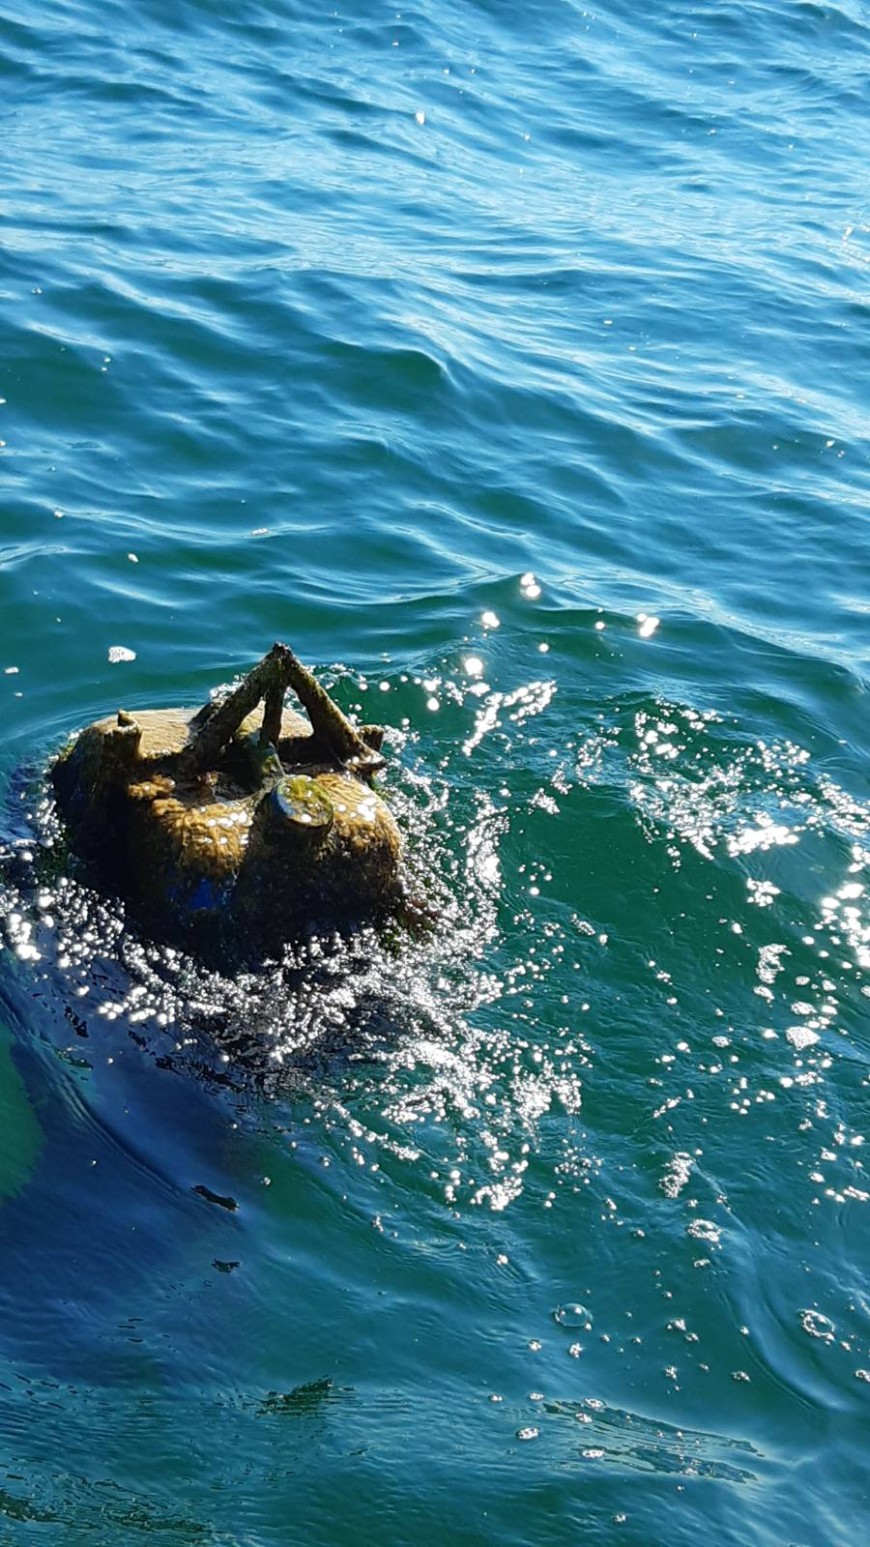 ВМС провери съмнителен предмет, плаващ на около 700 метра от брега край Дълбока